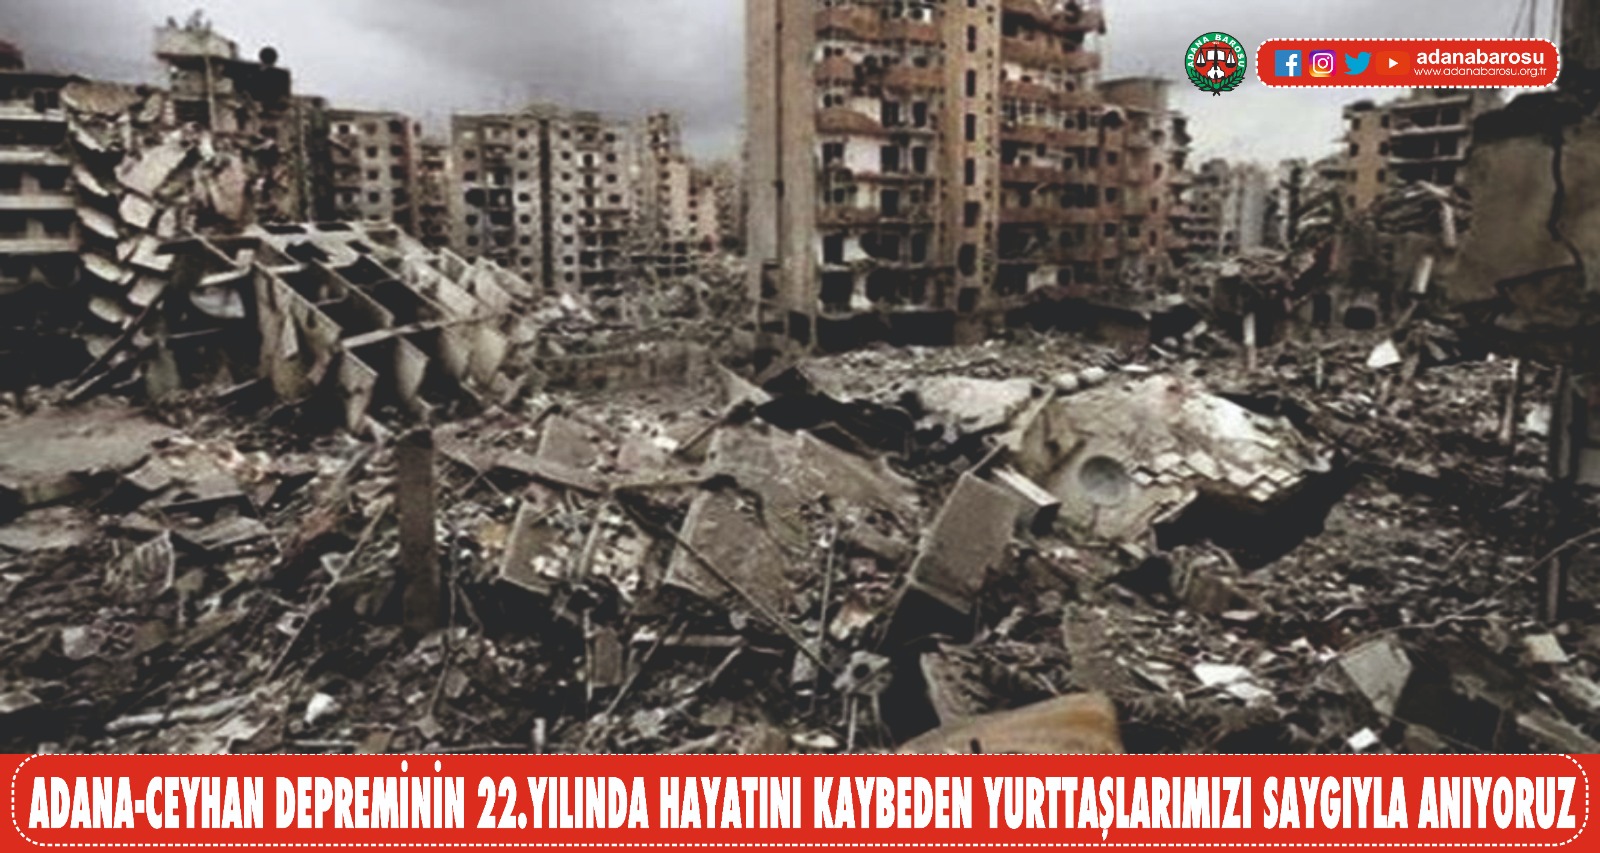 Adana, Doğu Anadolu Fay Hattında meydana gelen depremlerden birinci derecede etkileniyor. Merkez üssü Adana olmayan depremlerde dahi şehirde can kayıpları yaşanabiliyor. 